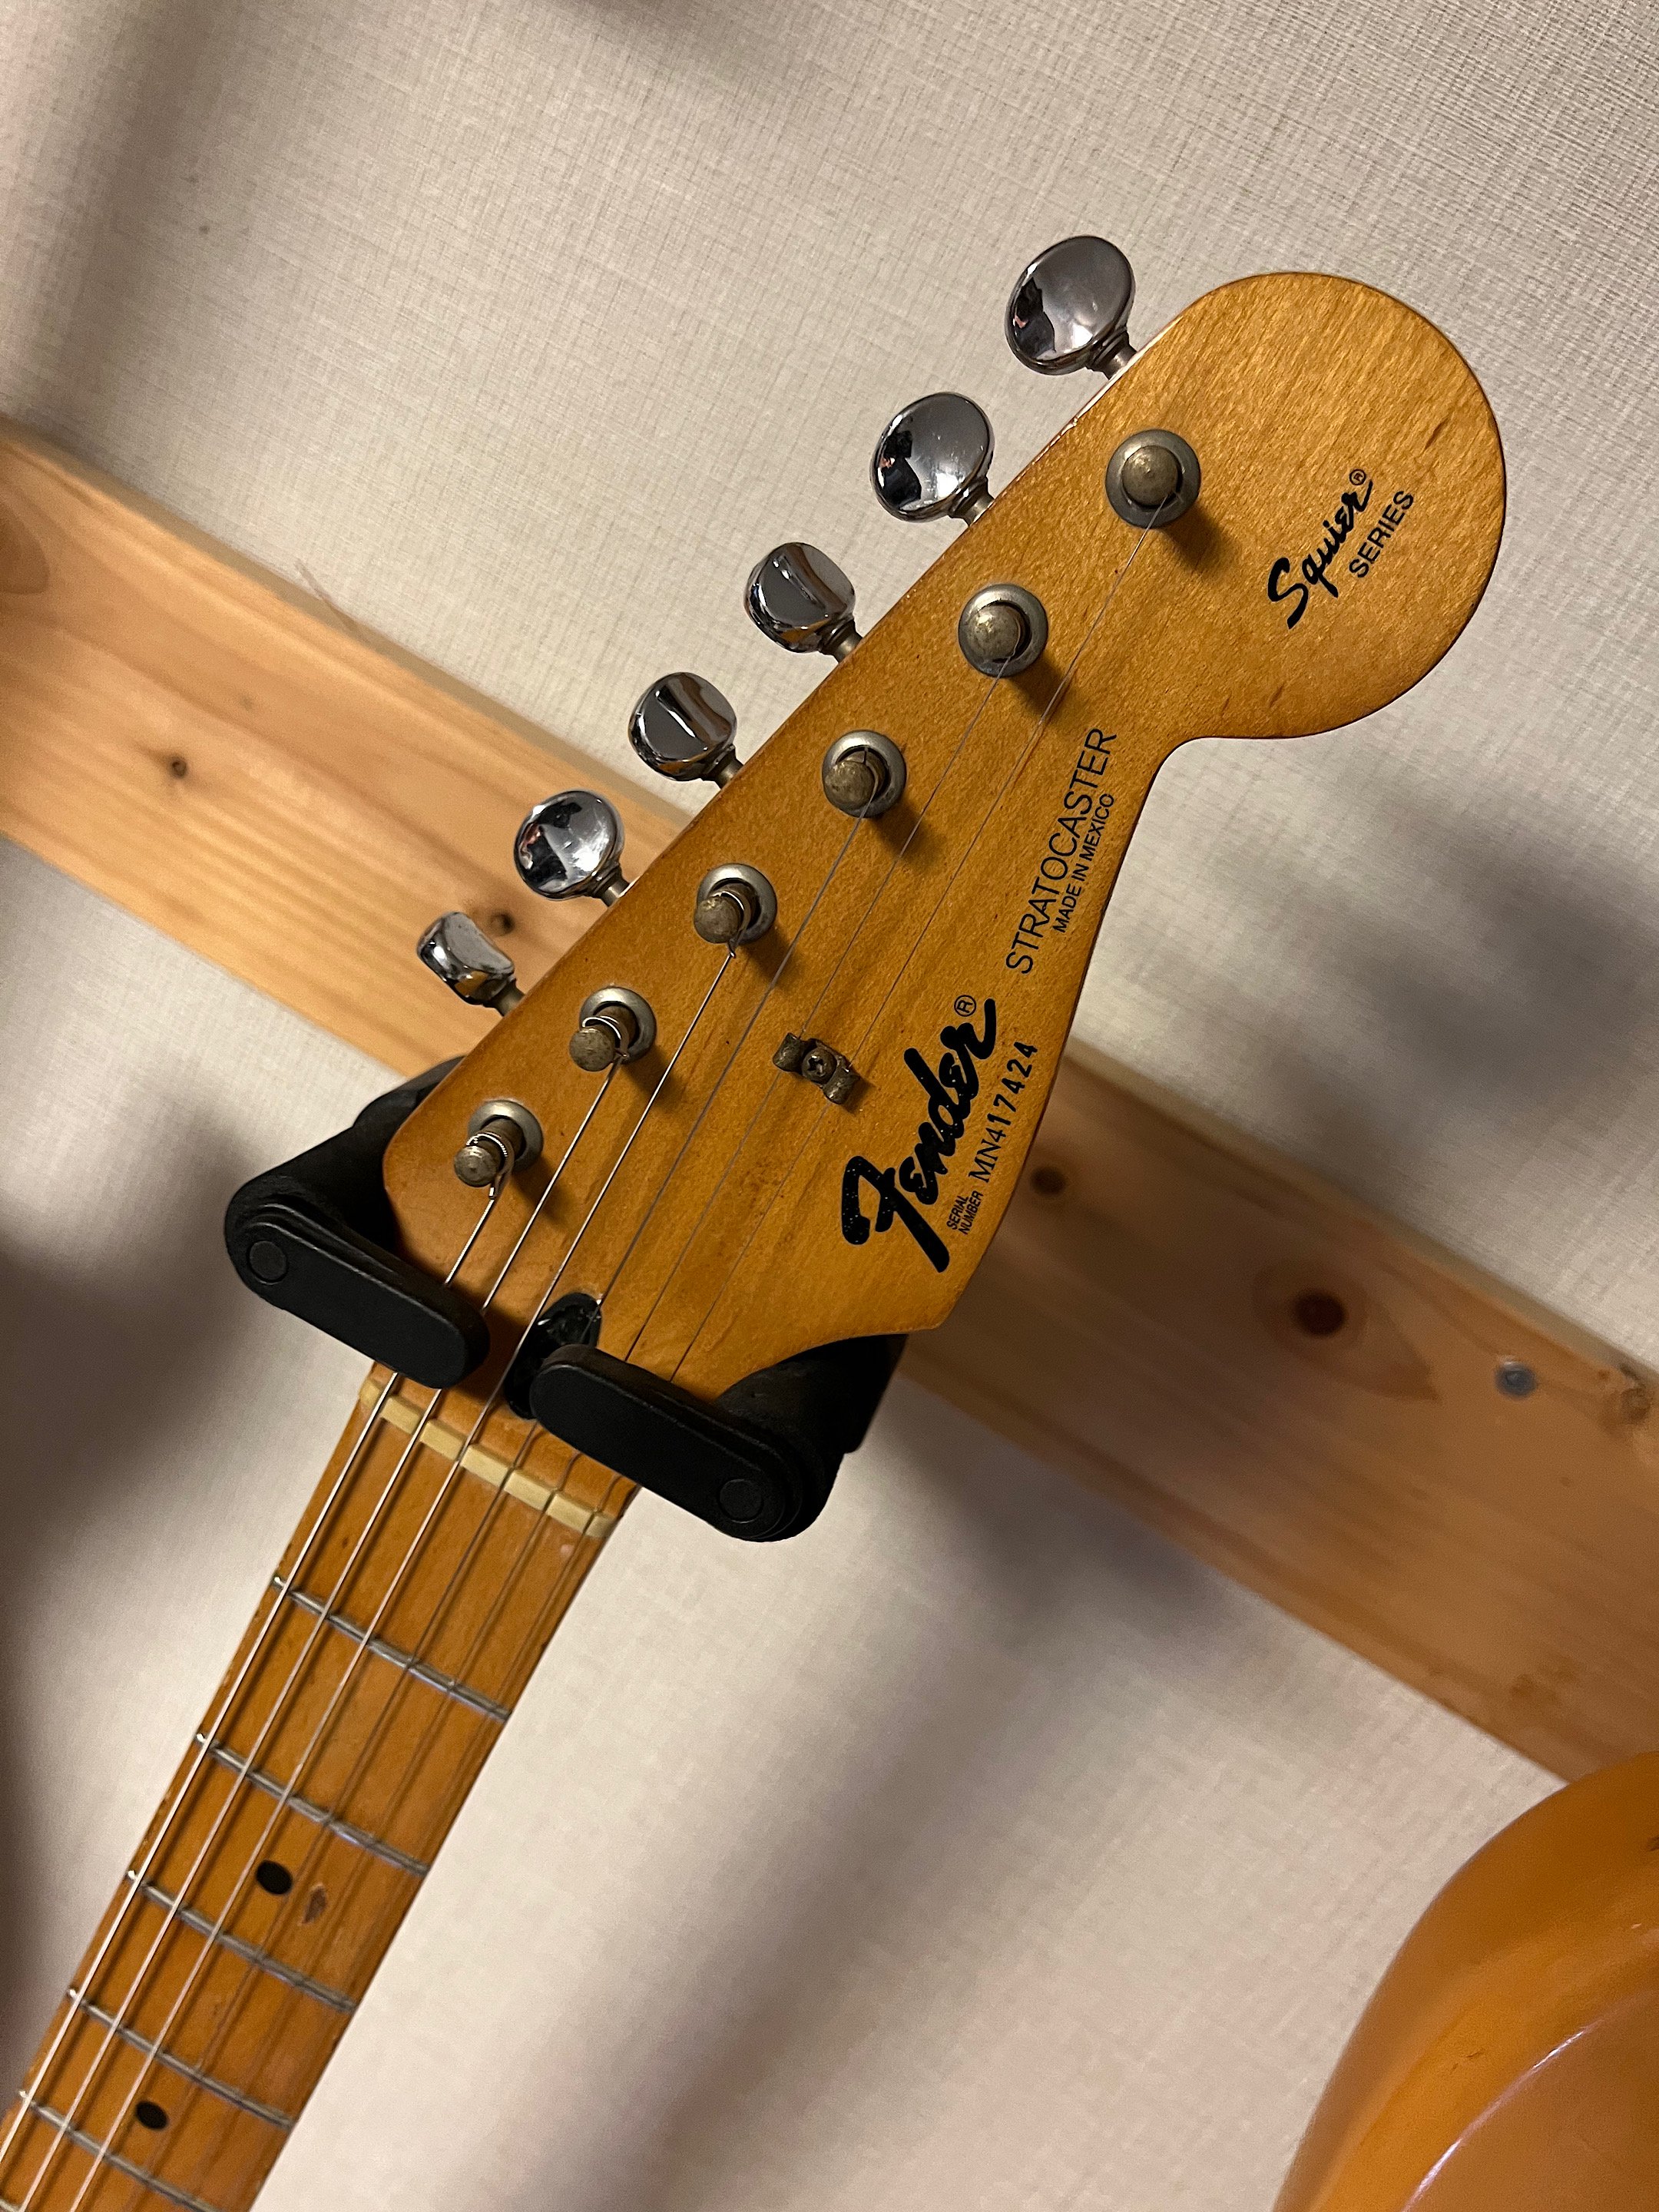 SALE TACK様 Fender Guitar Made In Mexico abamedyc.com